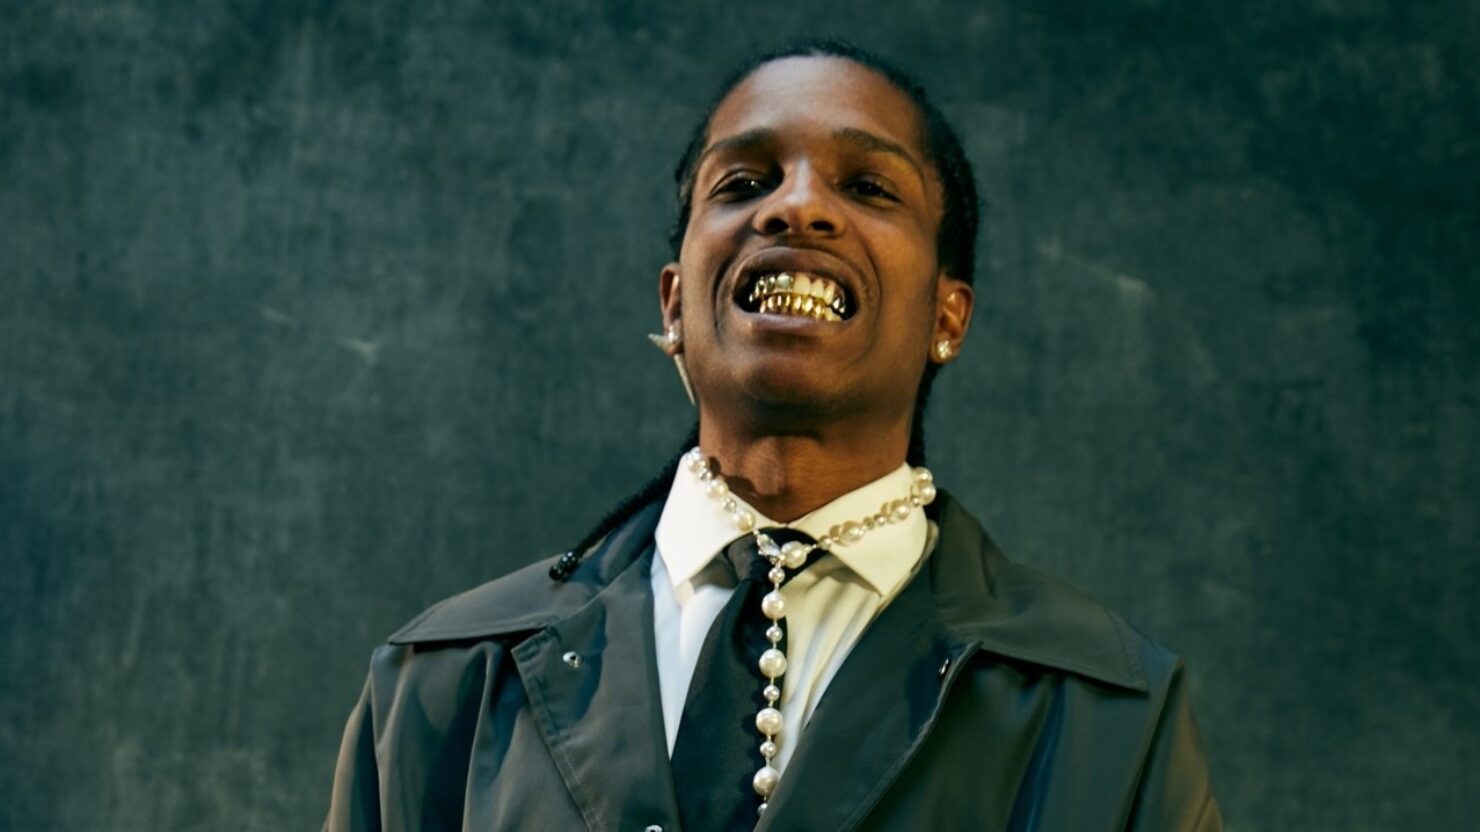 Le premier album d'A$AP Rocky depuis 2018 devrait sortir